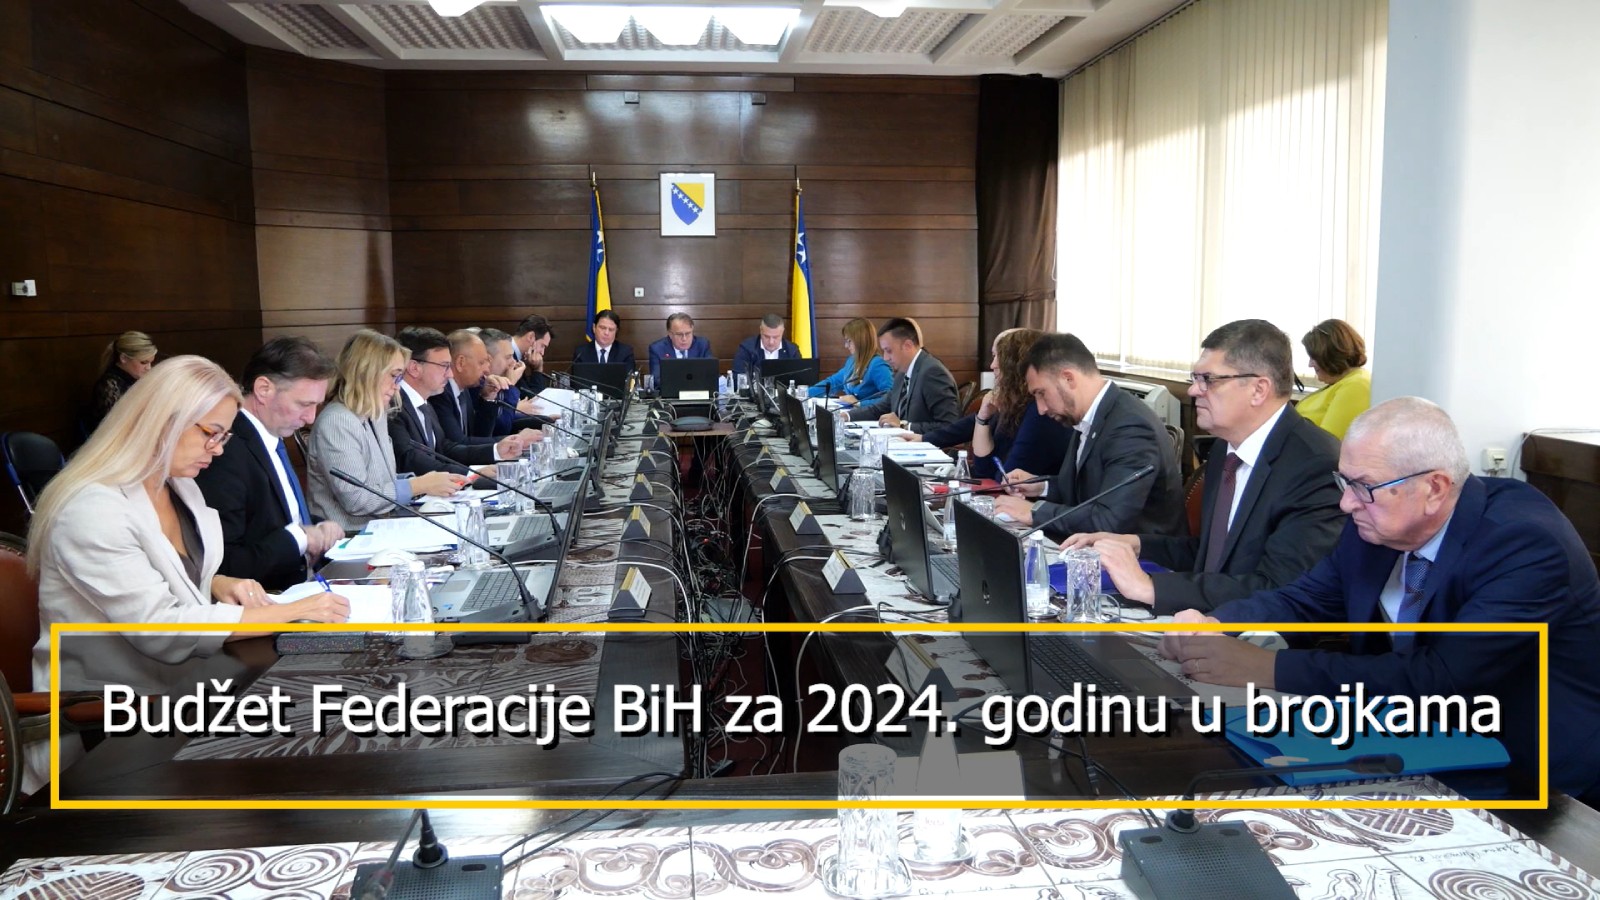 Video prezentacija Budžeta Federacije BiH za 2024. godinu: Značajna ulaganja u poboljšanje životnog standarda građana